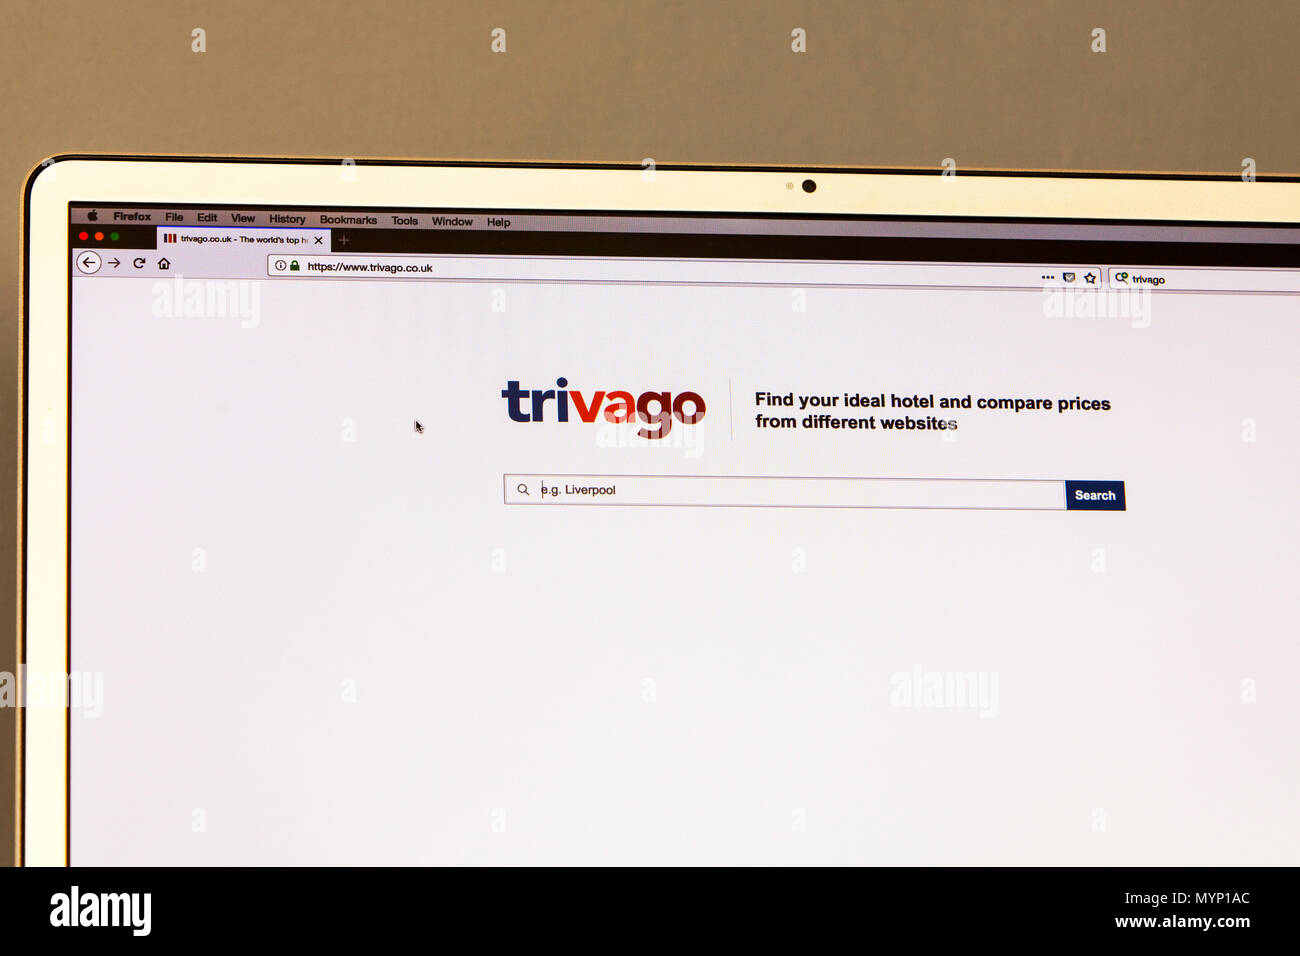 Trivago, Trivago page d'accueil, Trivago hotel site de comparaison de prix, comparateur de prix de l'hôtel, trivago trivago, comparaison de prix, site trivago accueil Banque D'Images